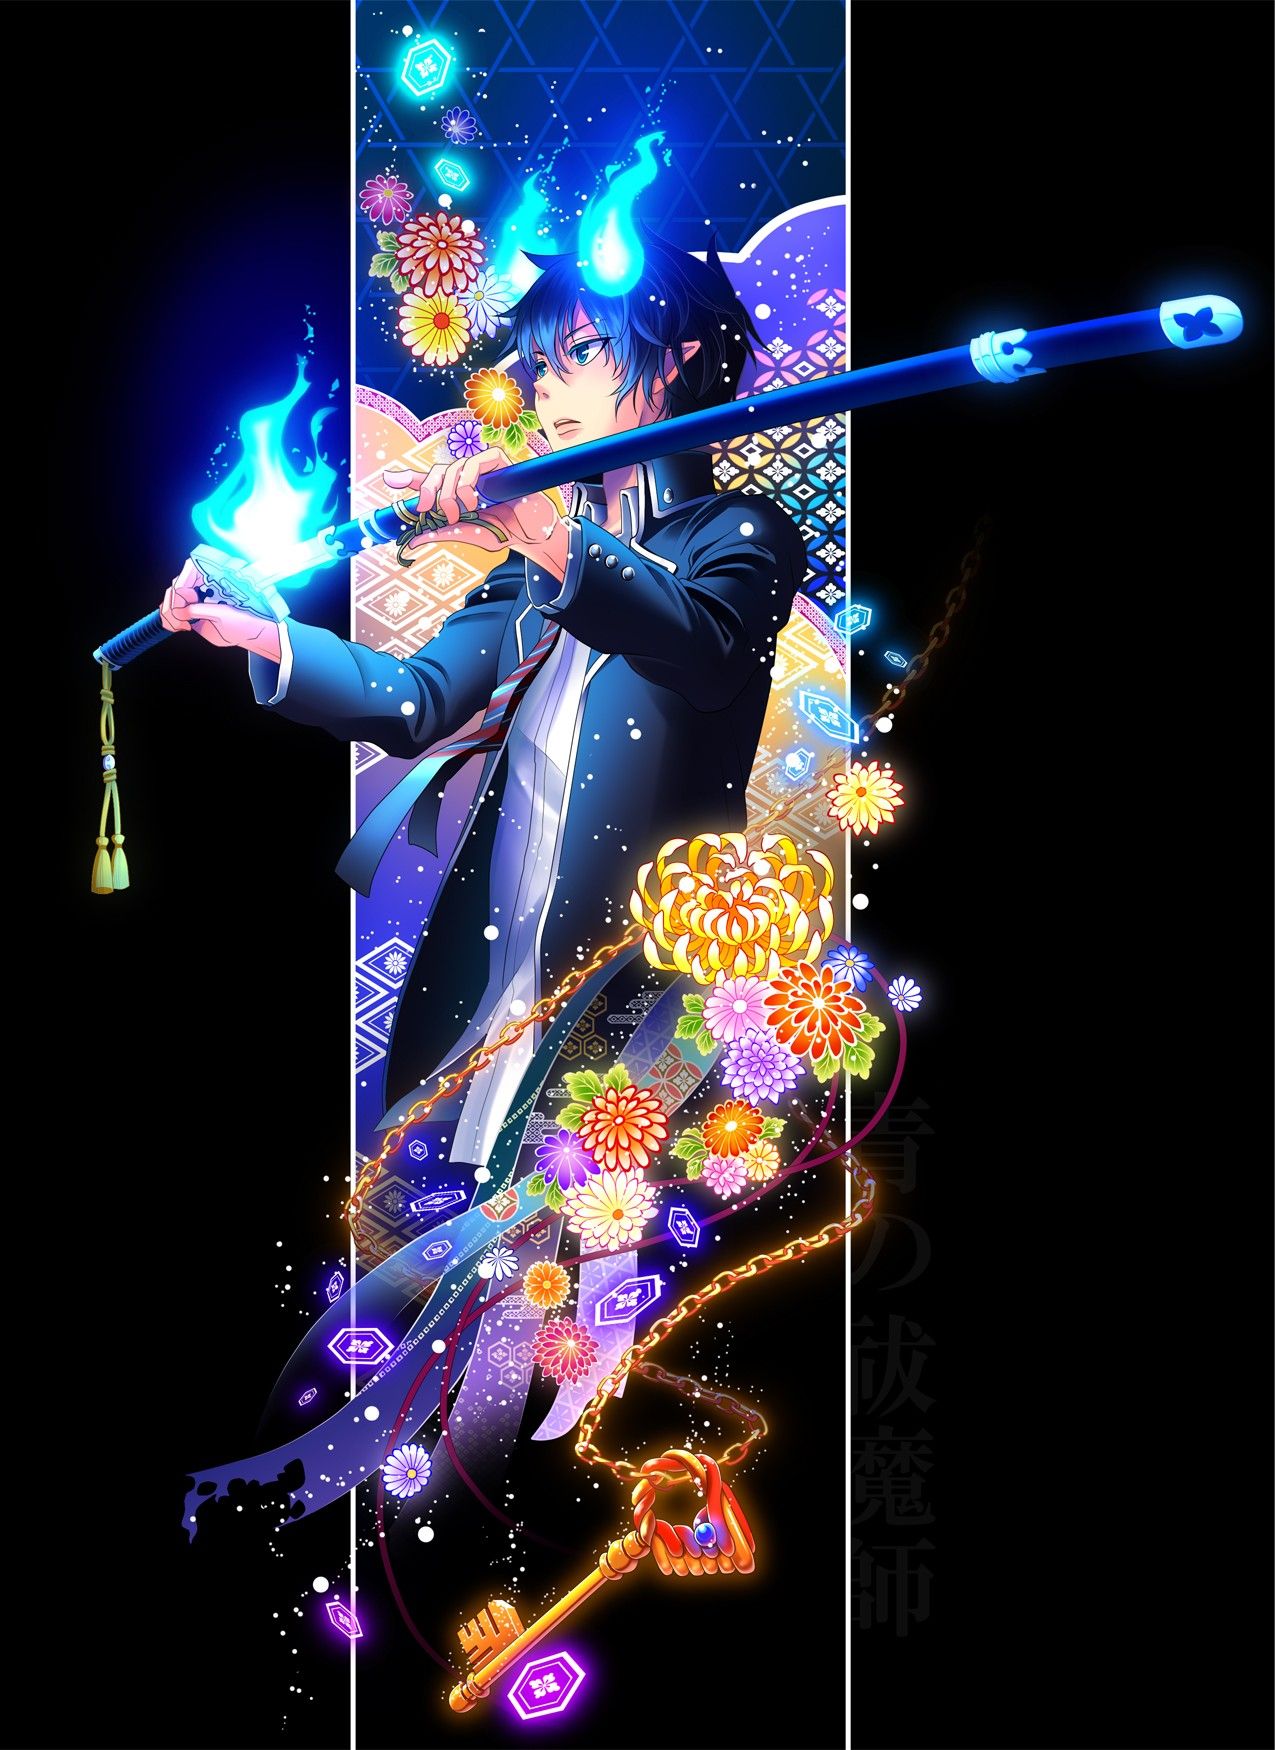 blaue exorzist iphone wallpaper,grafikdesign,performance,erfundener charakter,elektrisches blau,animation